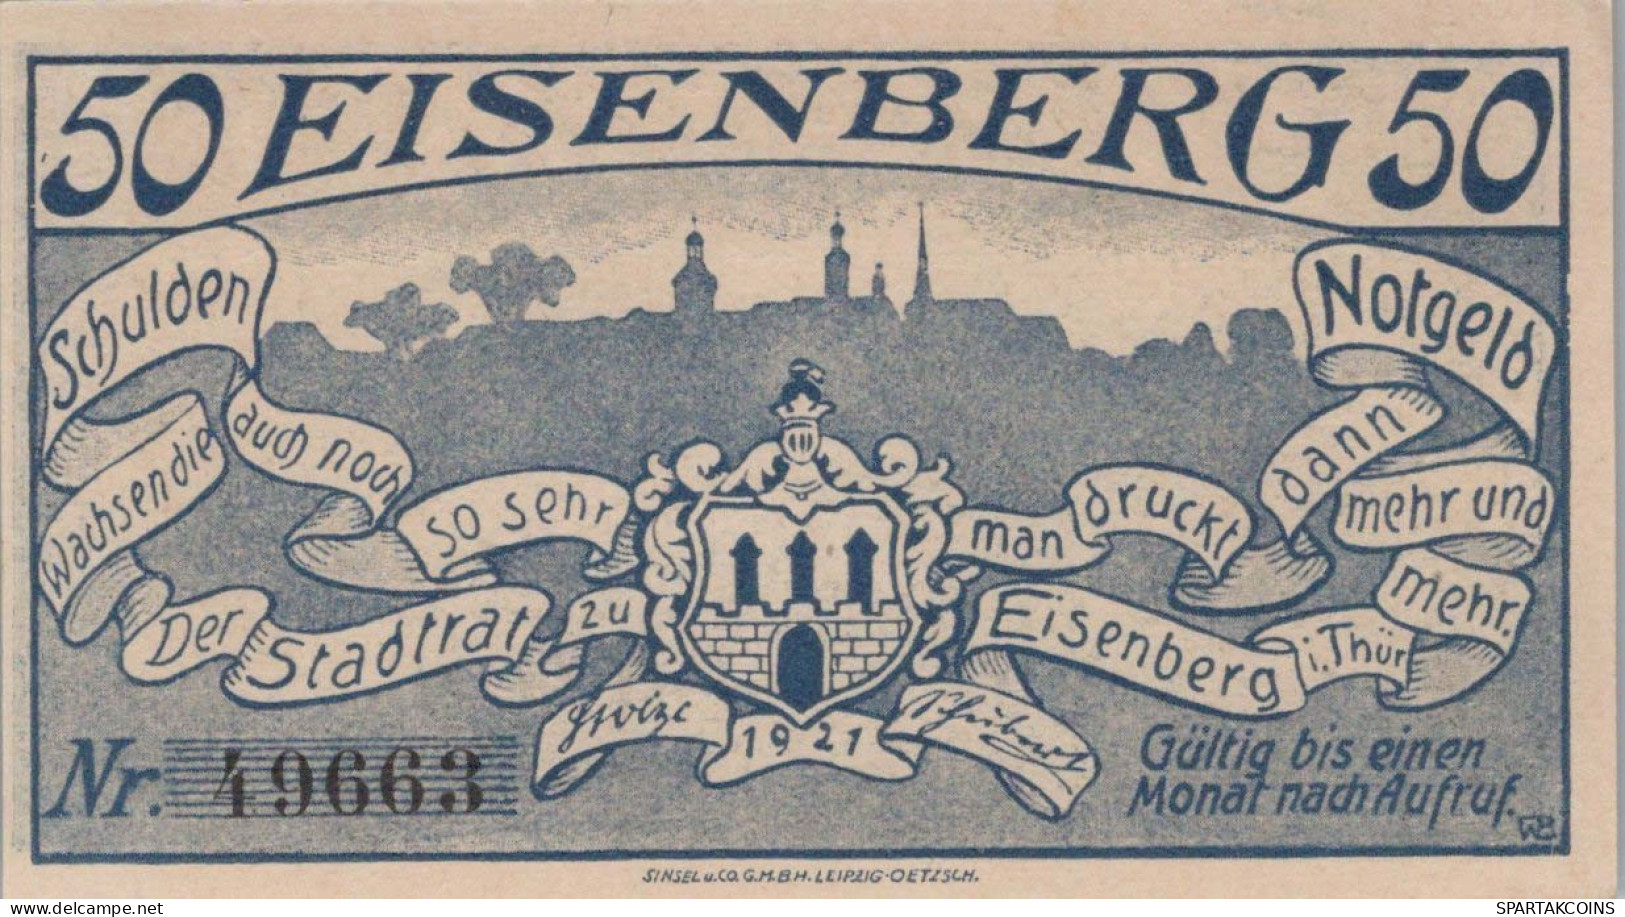 50 PFENNIG 1921 Stadt EISENACH Thuringia UNC DEUTSCHLAND Notgeld Banknote #PB142 - [11] Local Banknote Issues